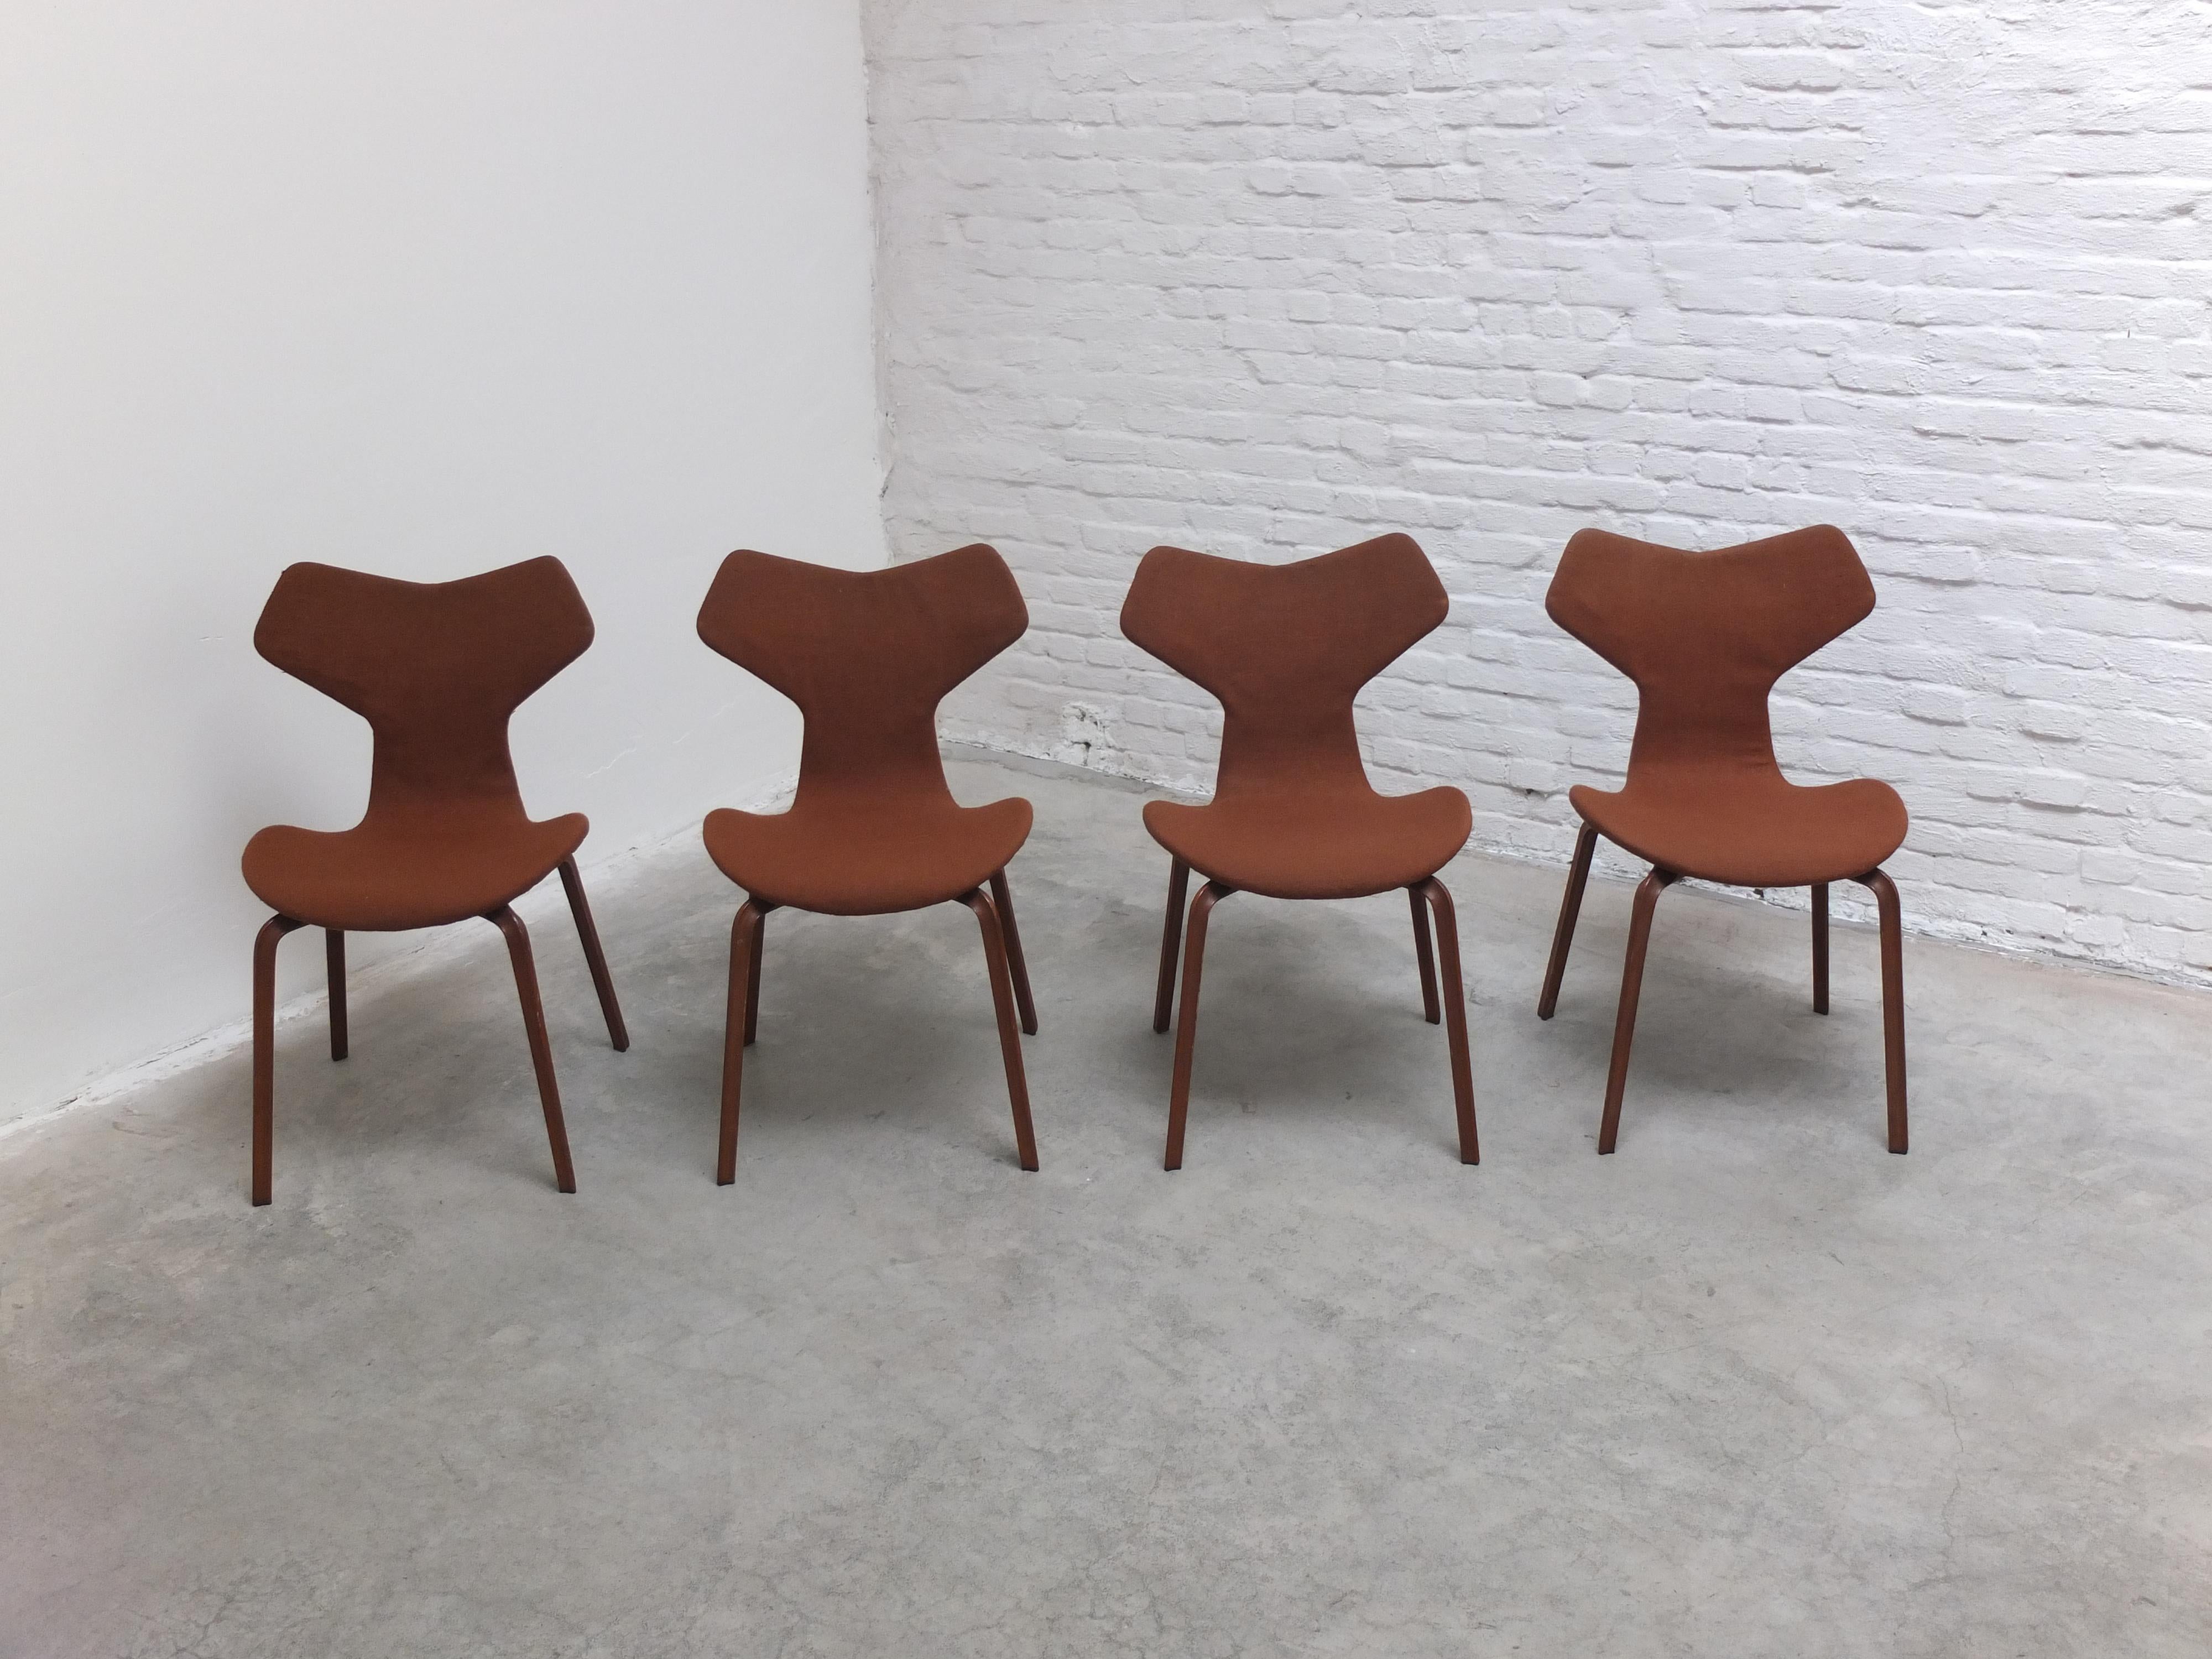 Außergewöhnlicher Satz von 4 'Grand Prix' Stühlen, entworfen von Arne Jacobsen für Fritz Hansen im Jahr 1957. Im selben Jahr wurde der Stuhl auf der Triennale in Mailand ausgestellt, wo er den Grand Prix, die höchste Auszeichnung der Ausstellung,